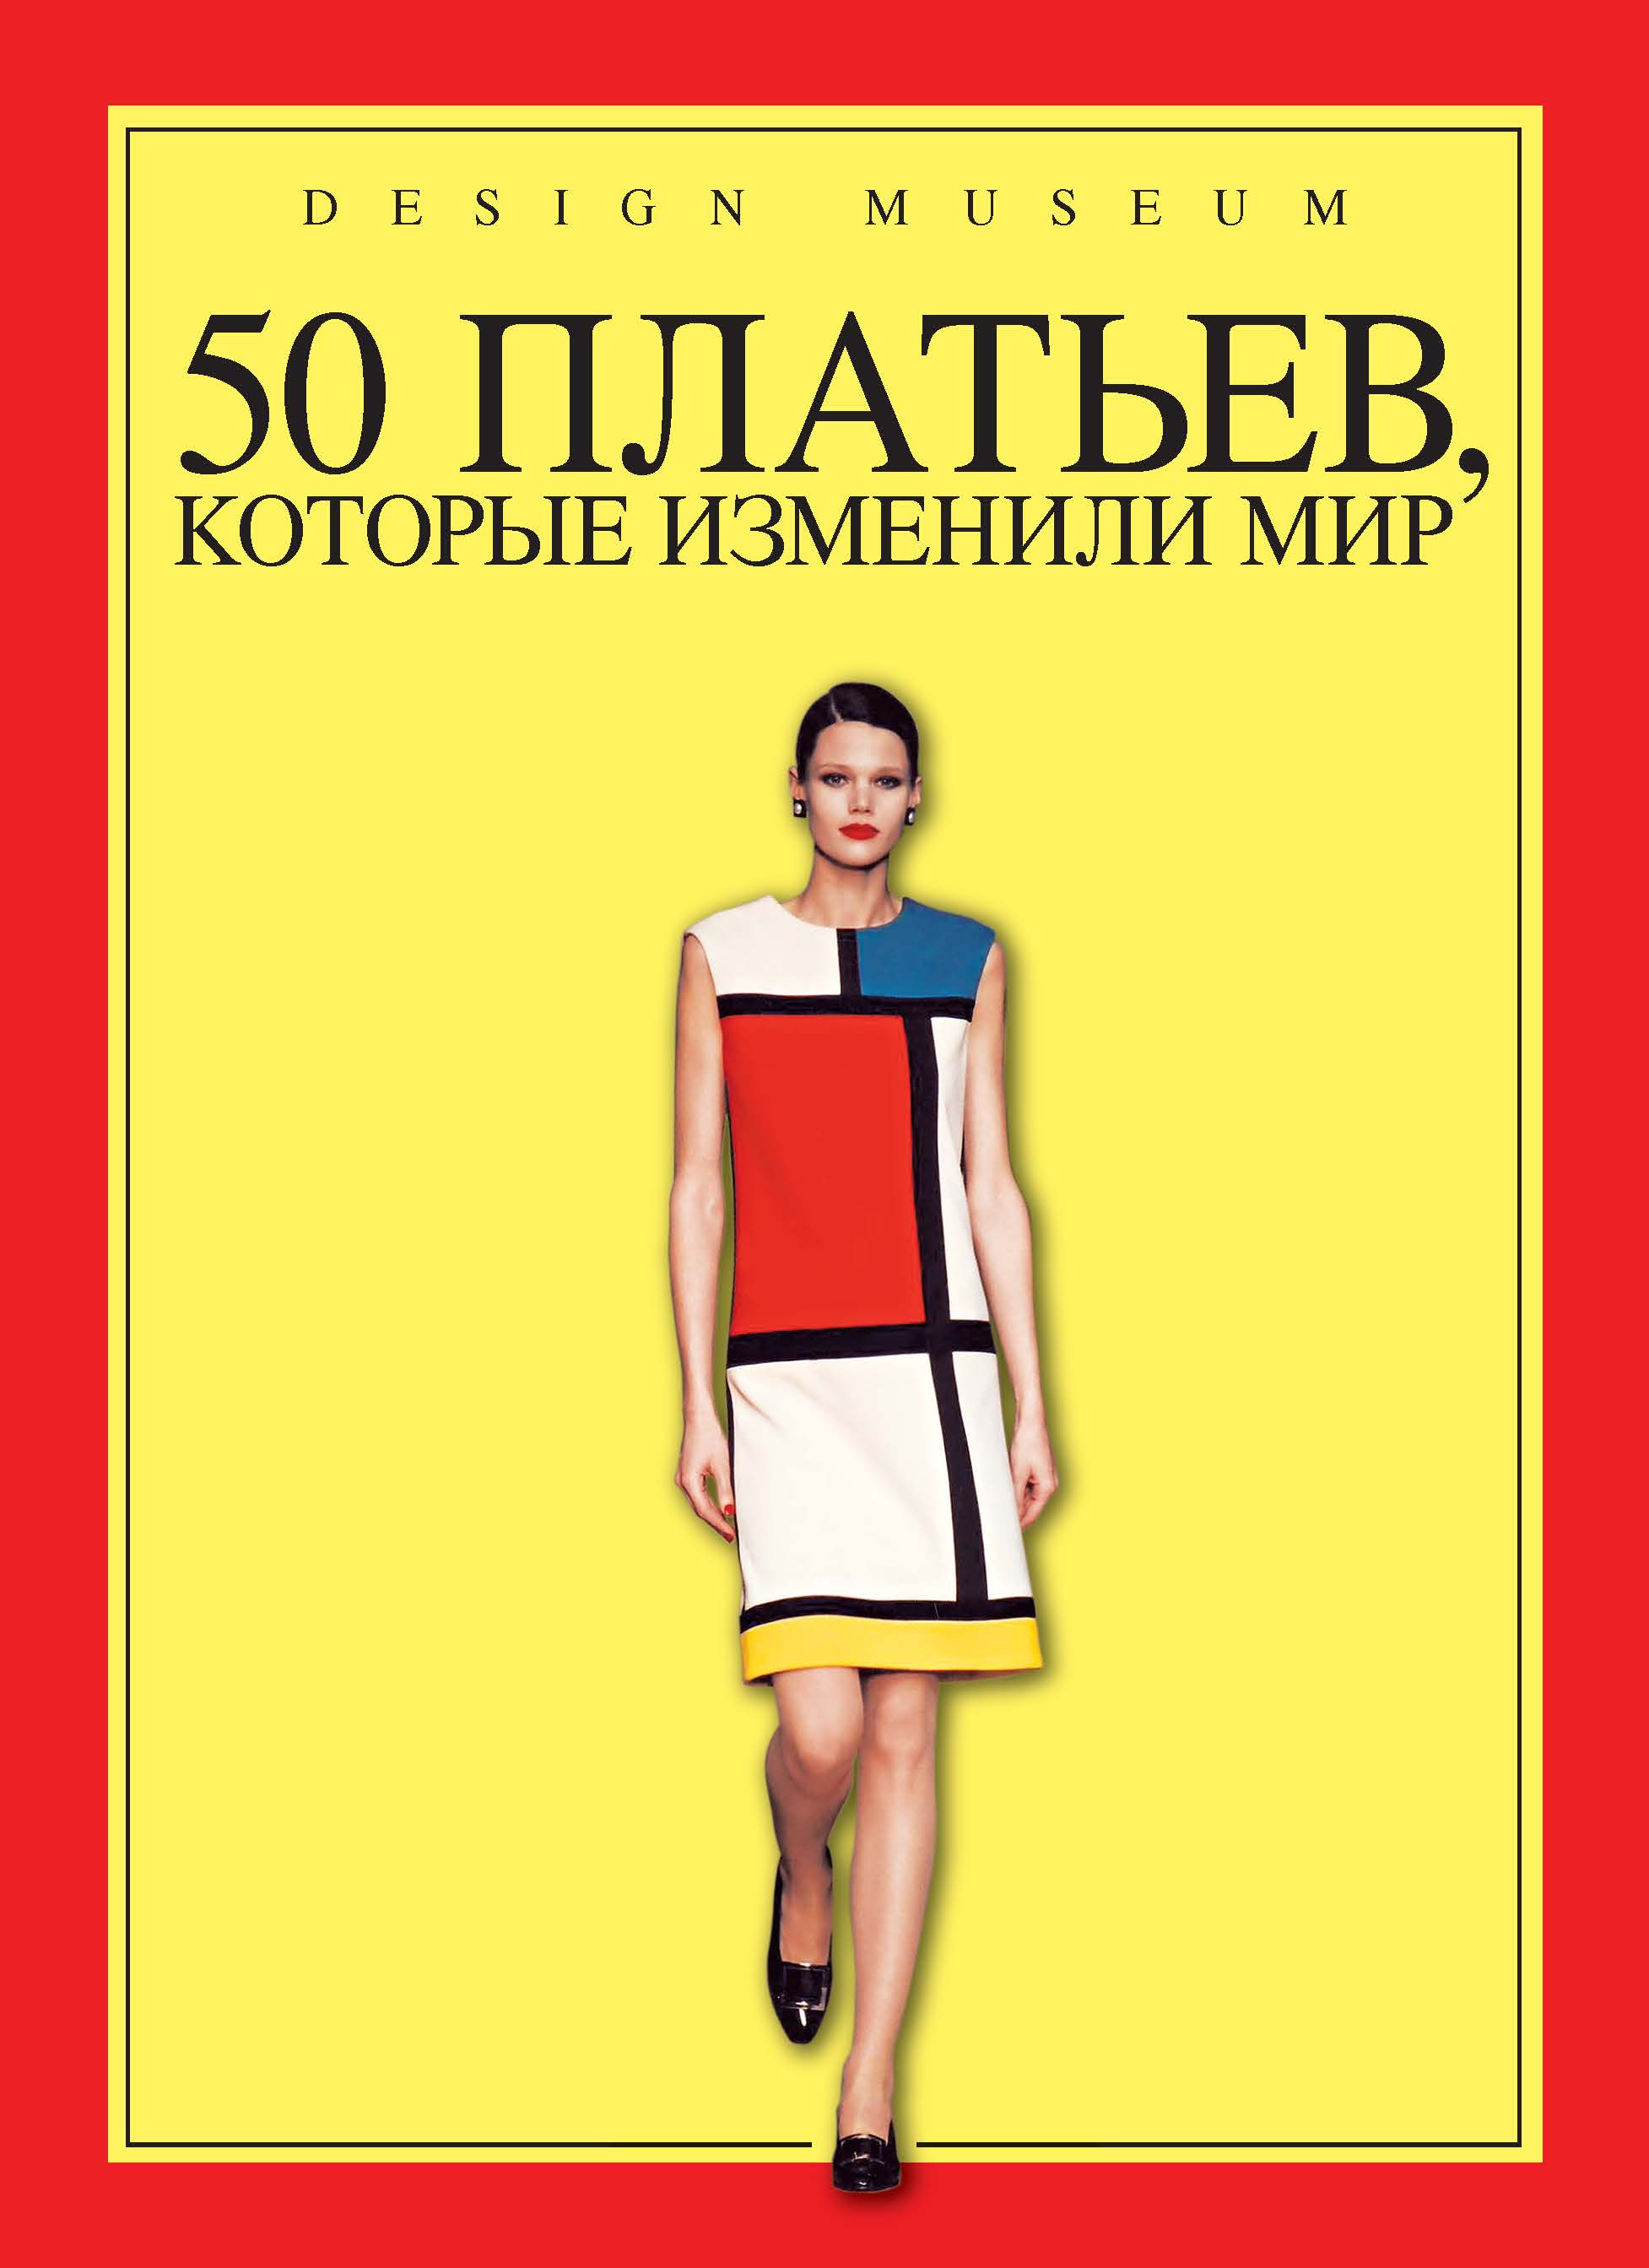 Книга "50 платьев, которые изменили мир" - купить книгу Fifty Dresses that Changed the World ISBN 978-5-389-06381-5 с доставкой по почте в интернет-магазине OZON.ru